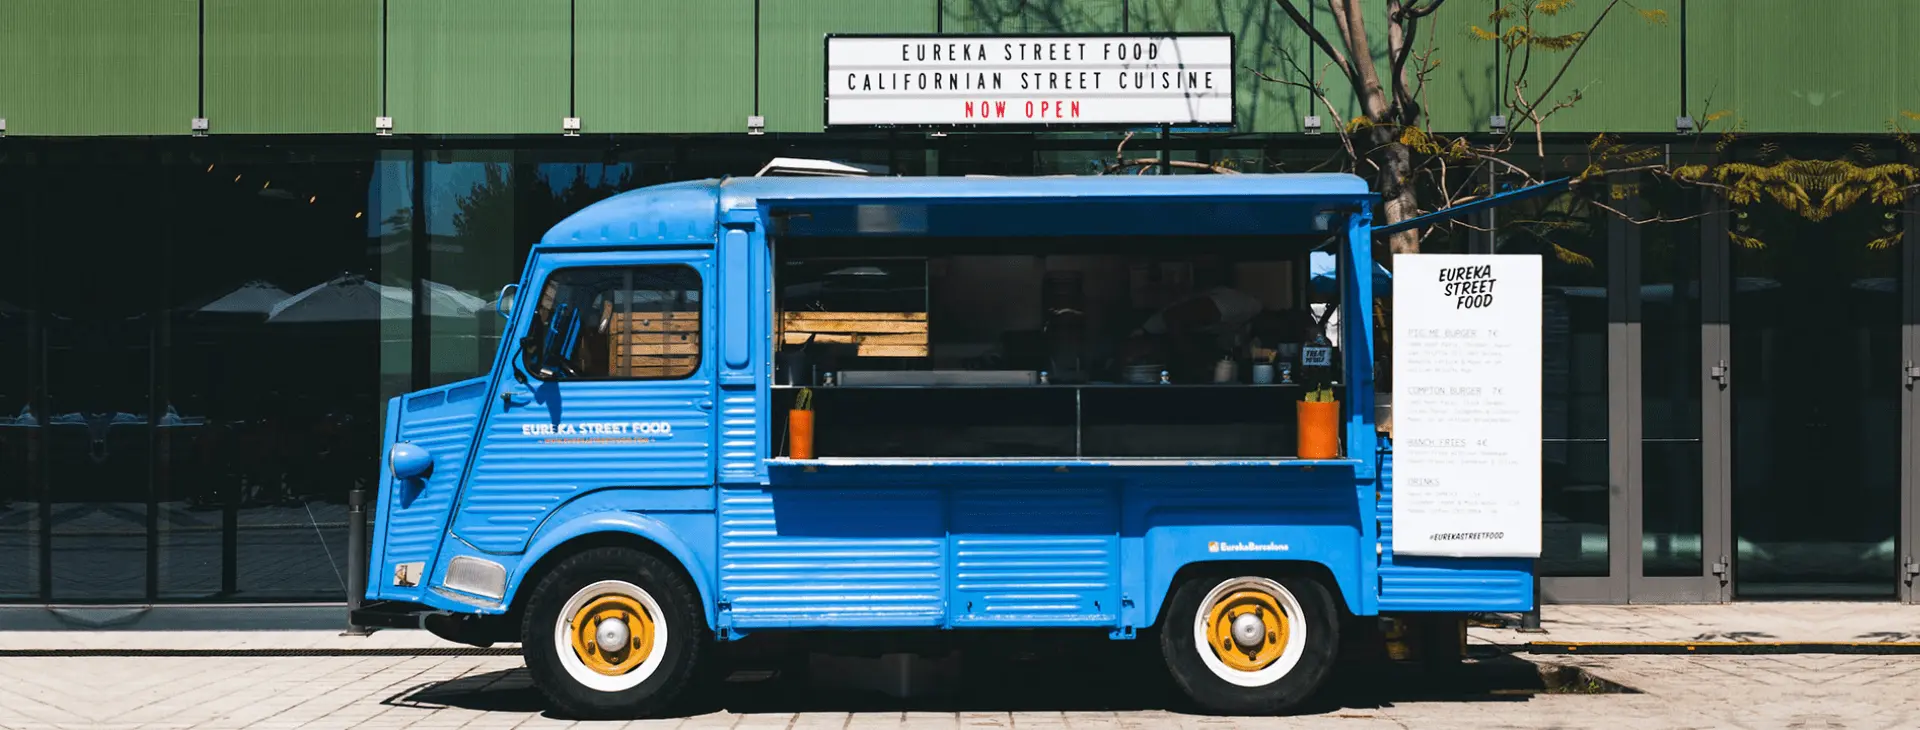 Food truck de la marca Eureka street food camión azul en la calle